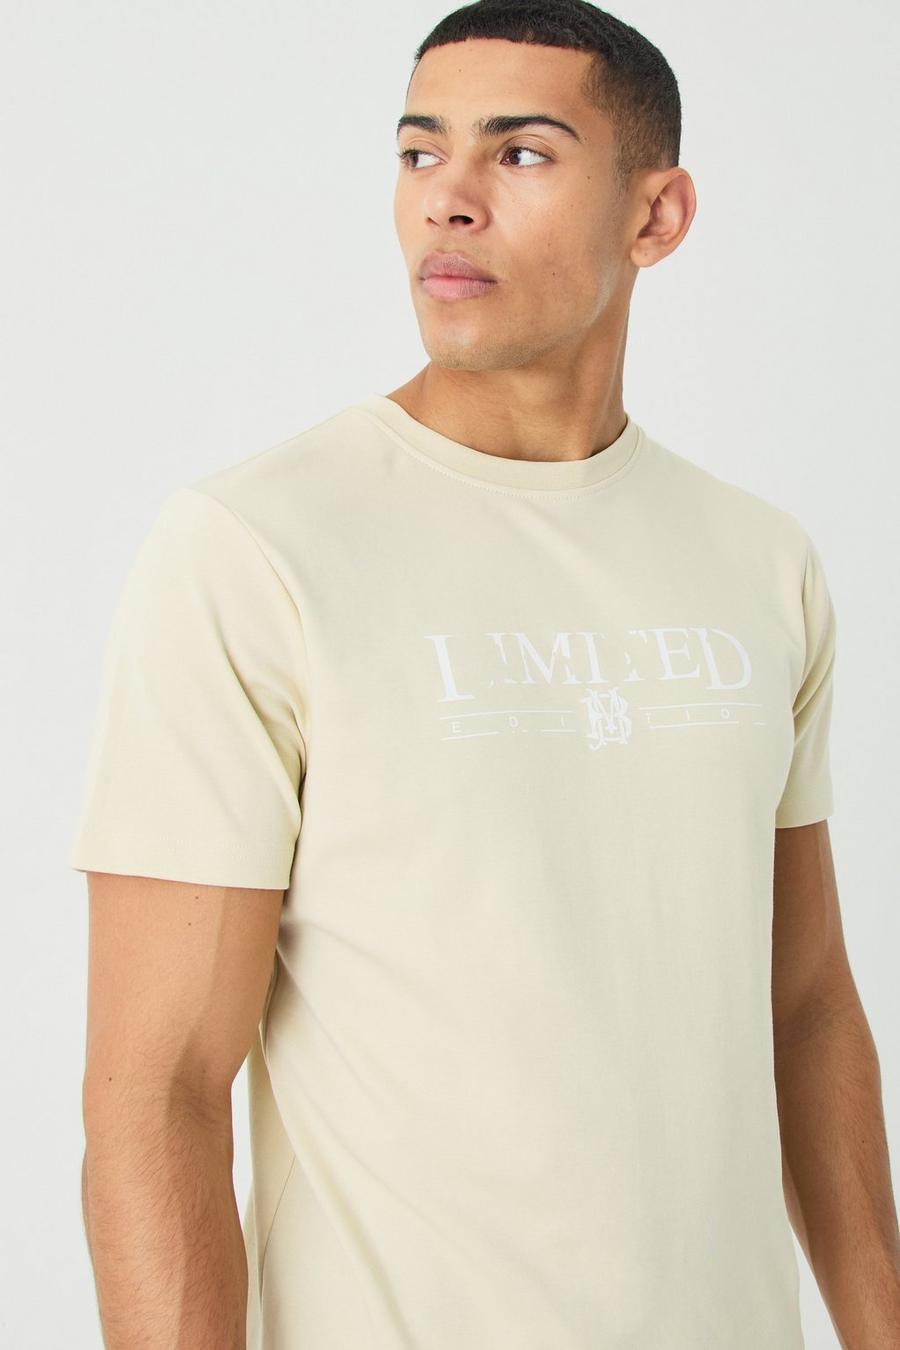 Camiseta ajustada Limited Edition, Sand